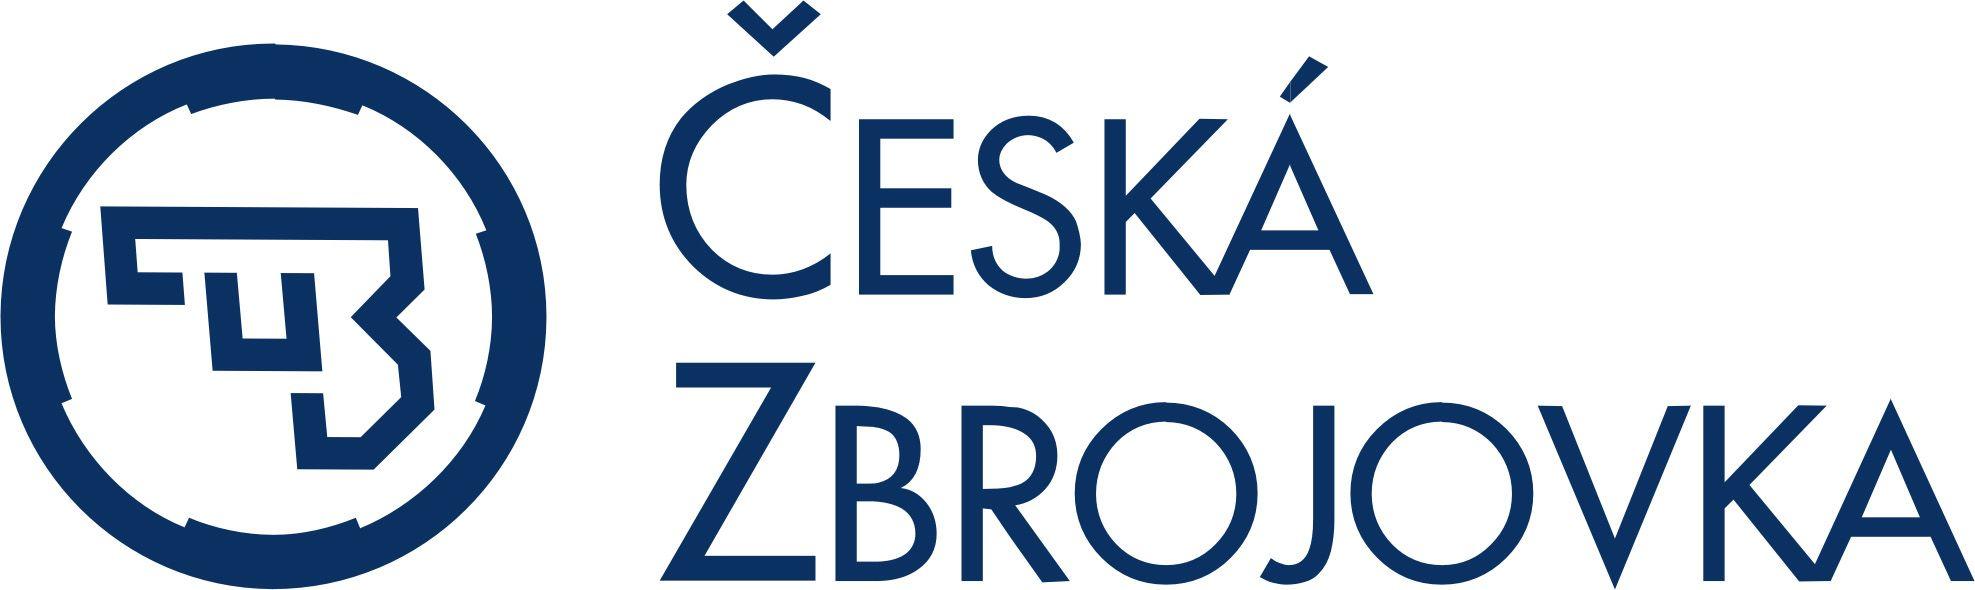 CZ Logo - Aftermath Girls | CZ logo